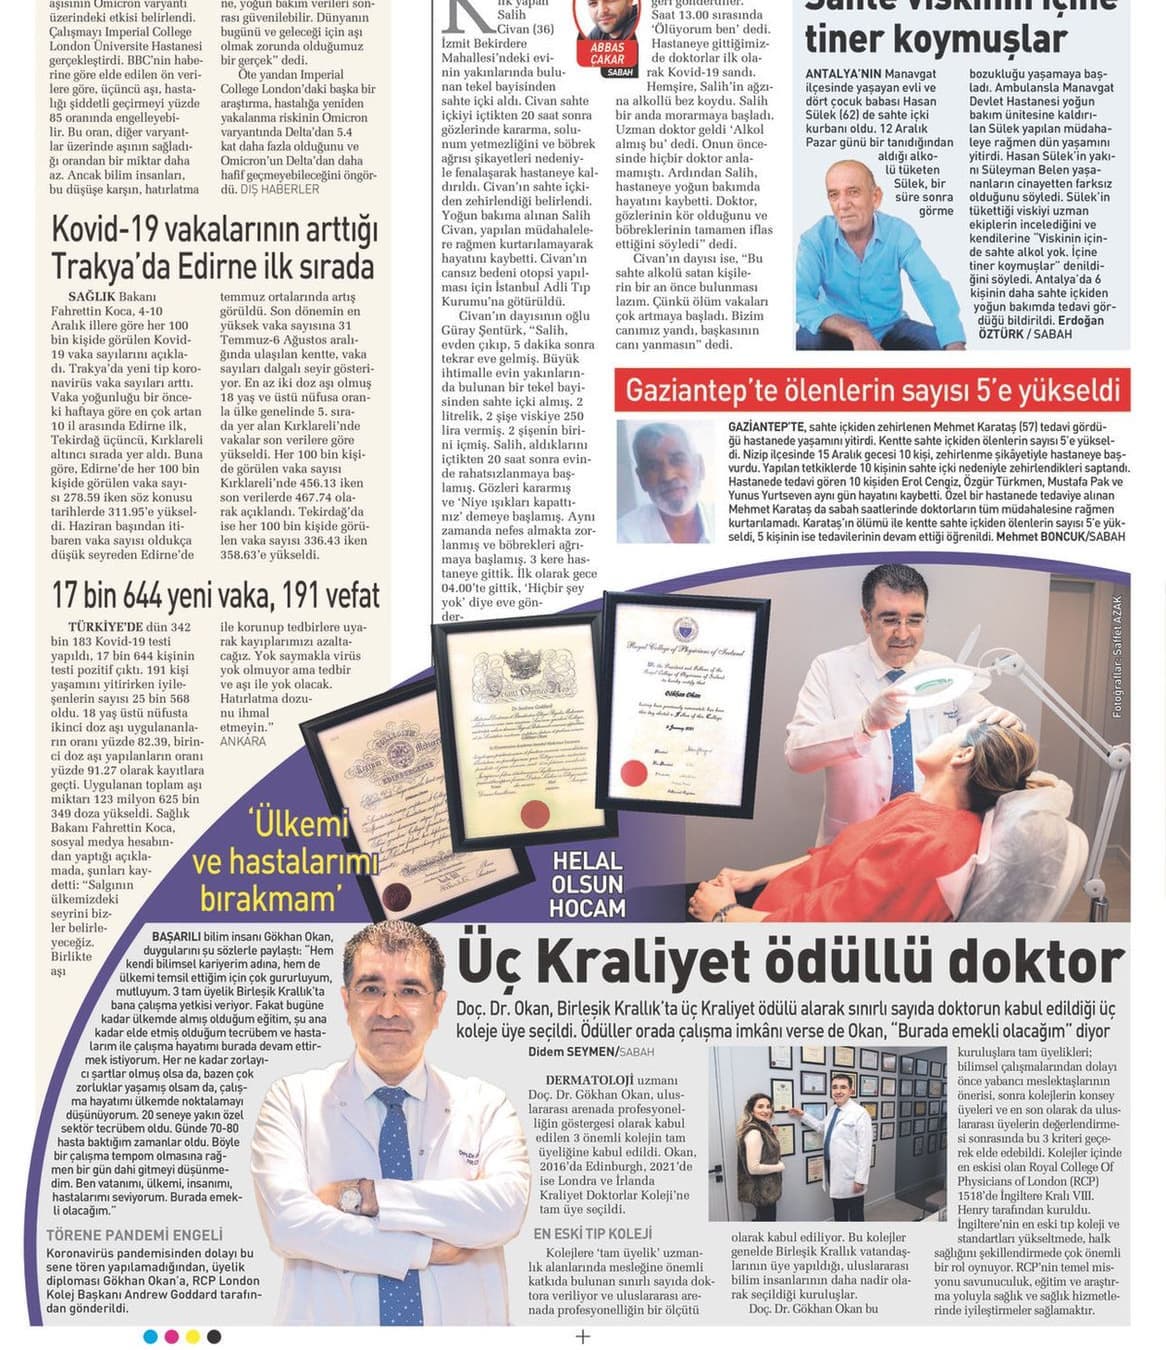 Sabah Gazetesi'nde Doç. Dr. Gökhan Okan'la ilgili haber..